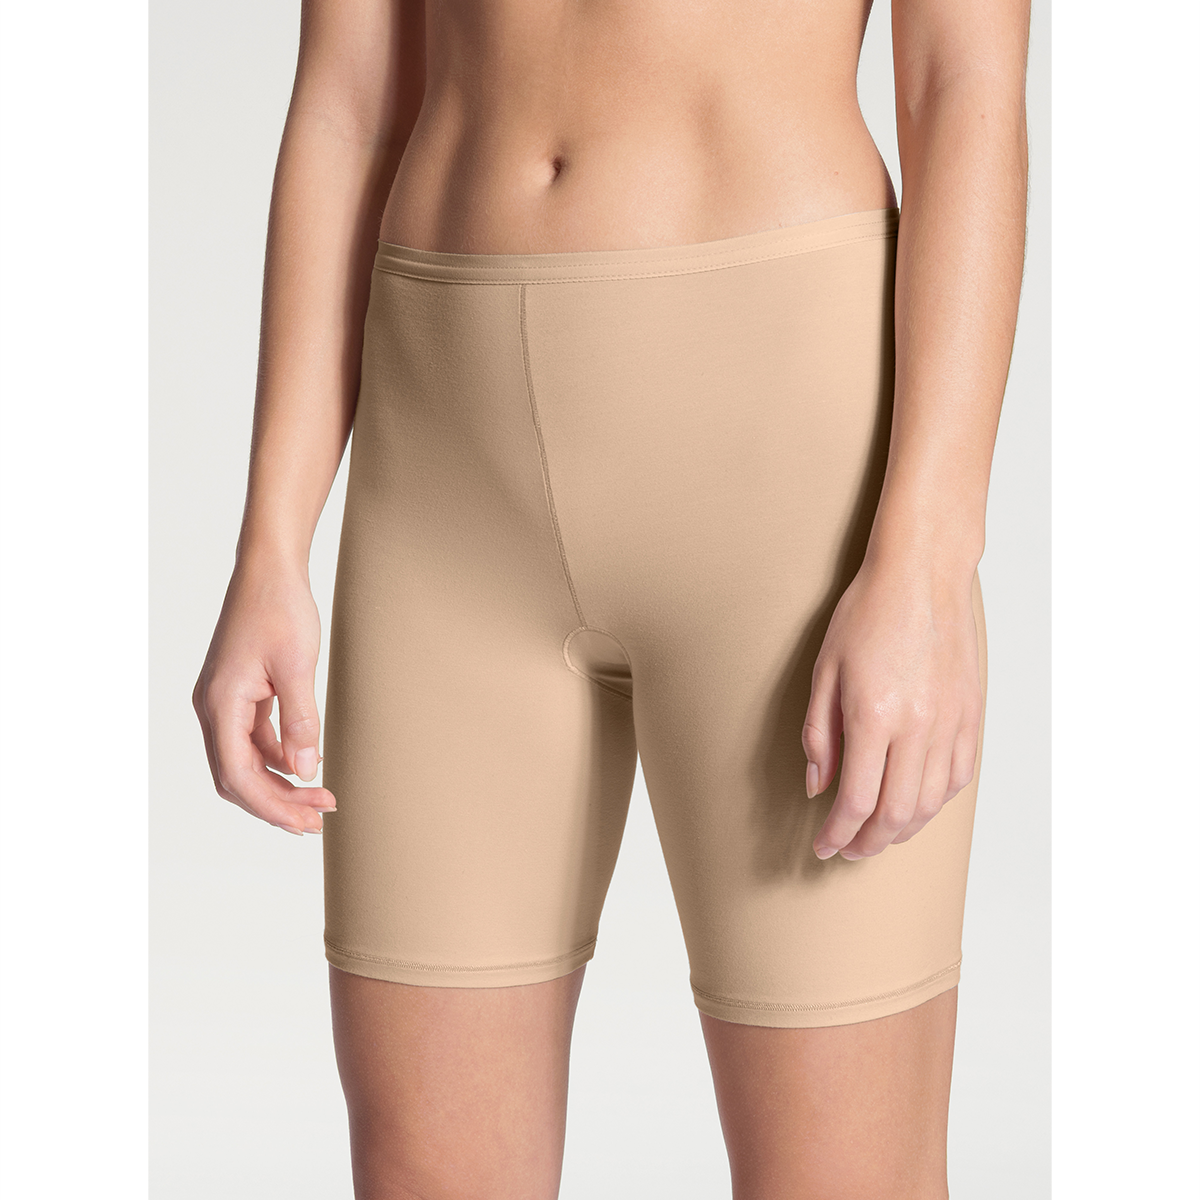 Calida Comfort Pants, Farve: Beige, Størrelse: M, Dame